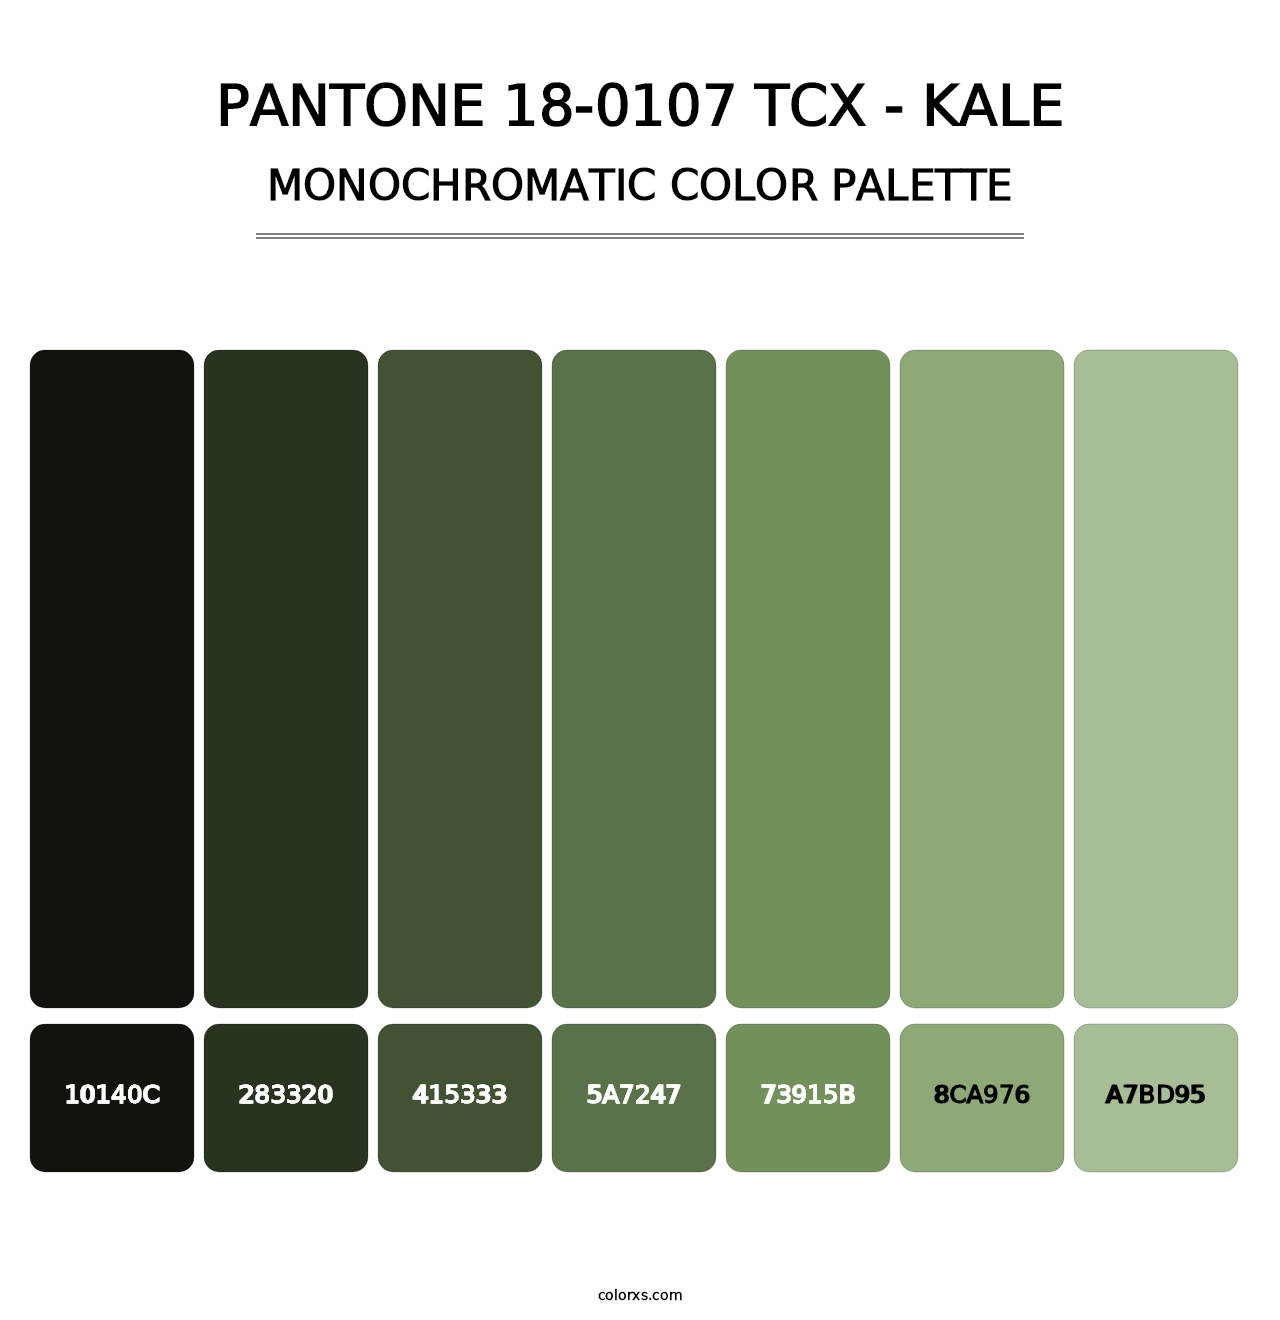 PANTONE 18-0107 TCX - Kale - Monochromatic Color Palette